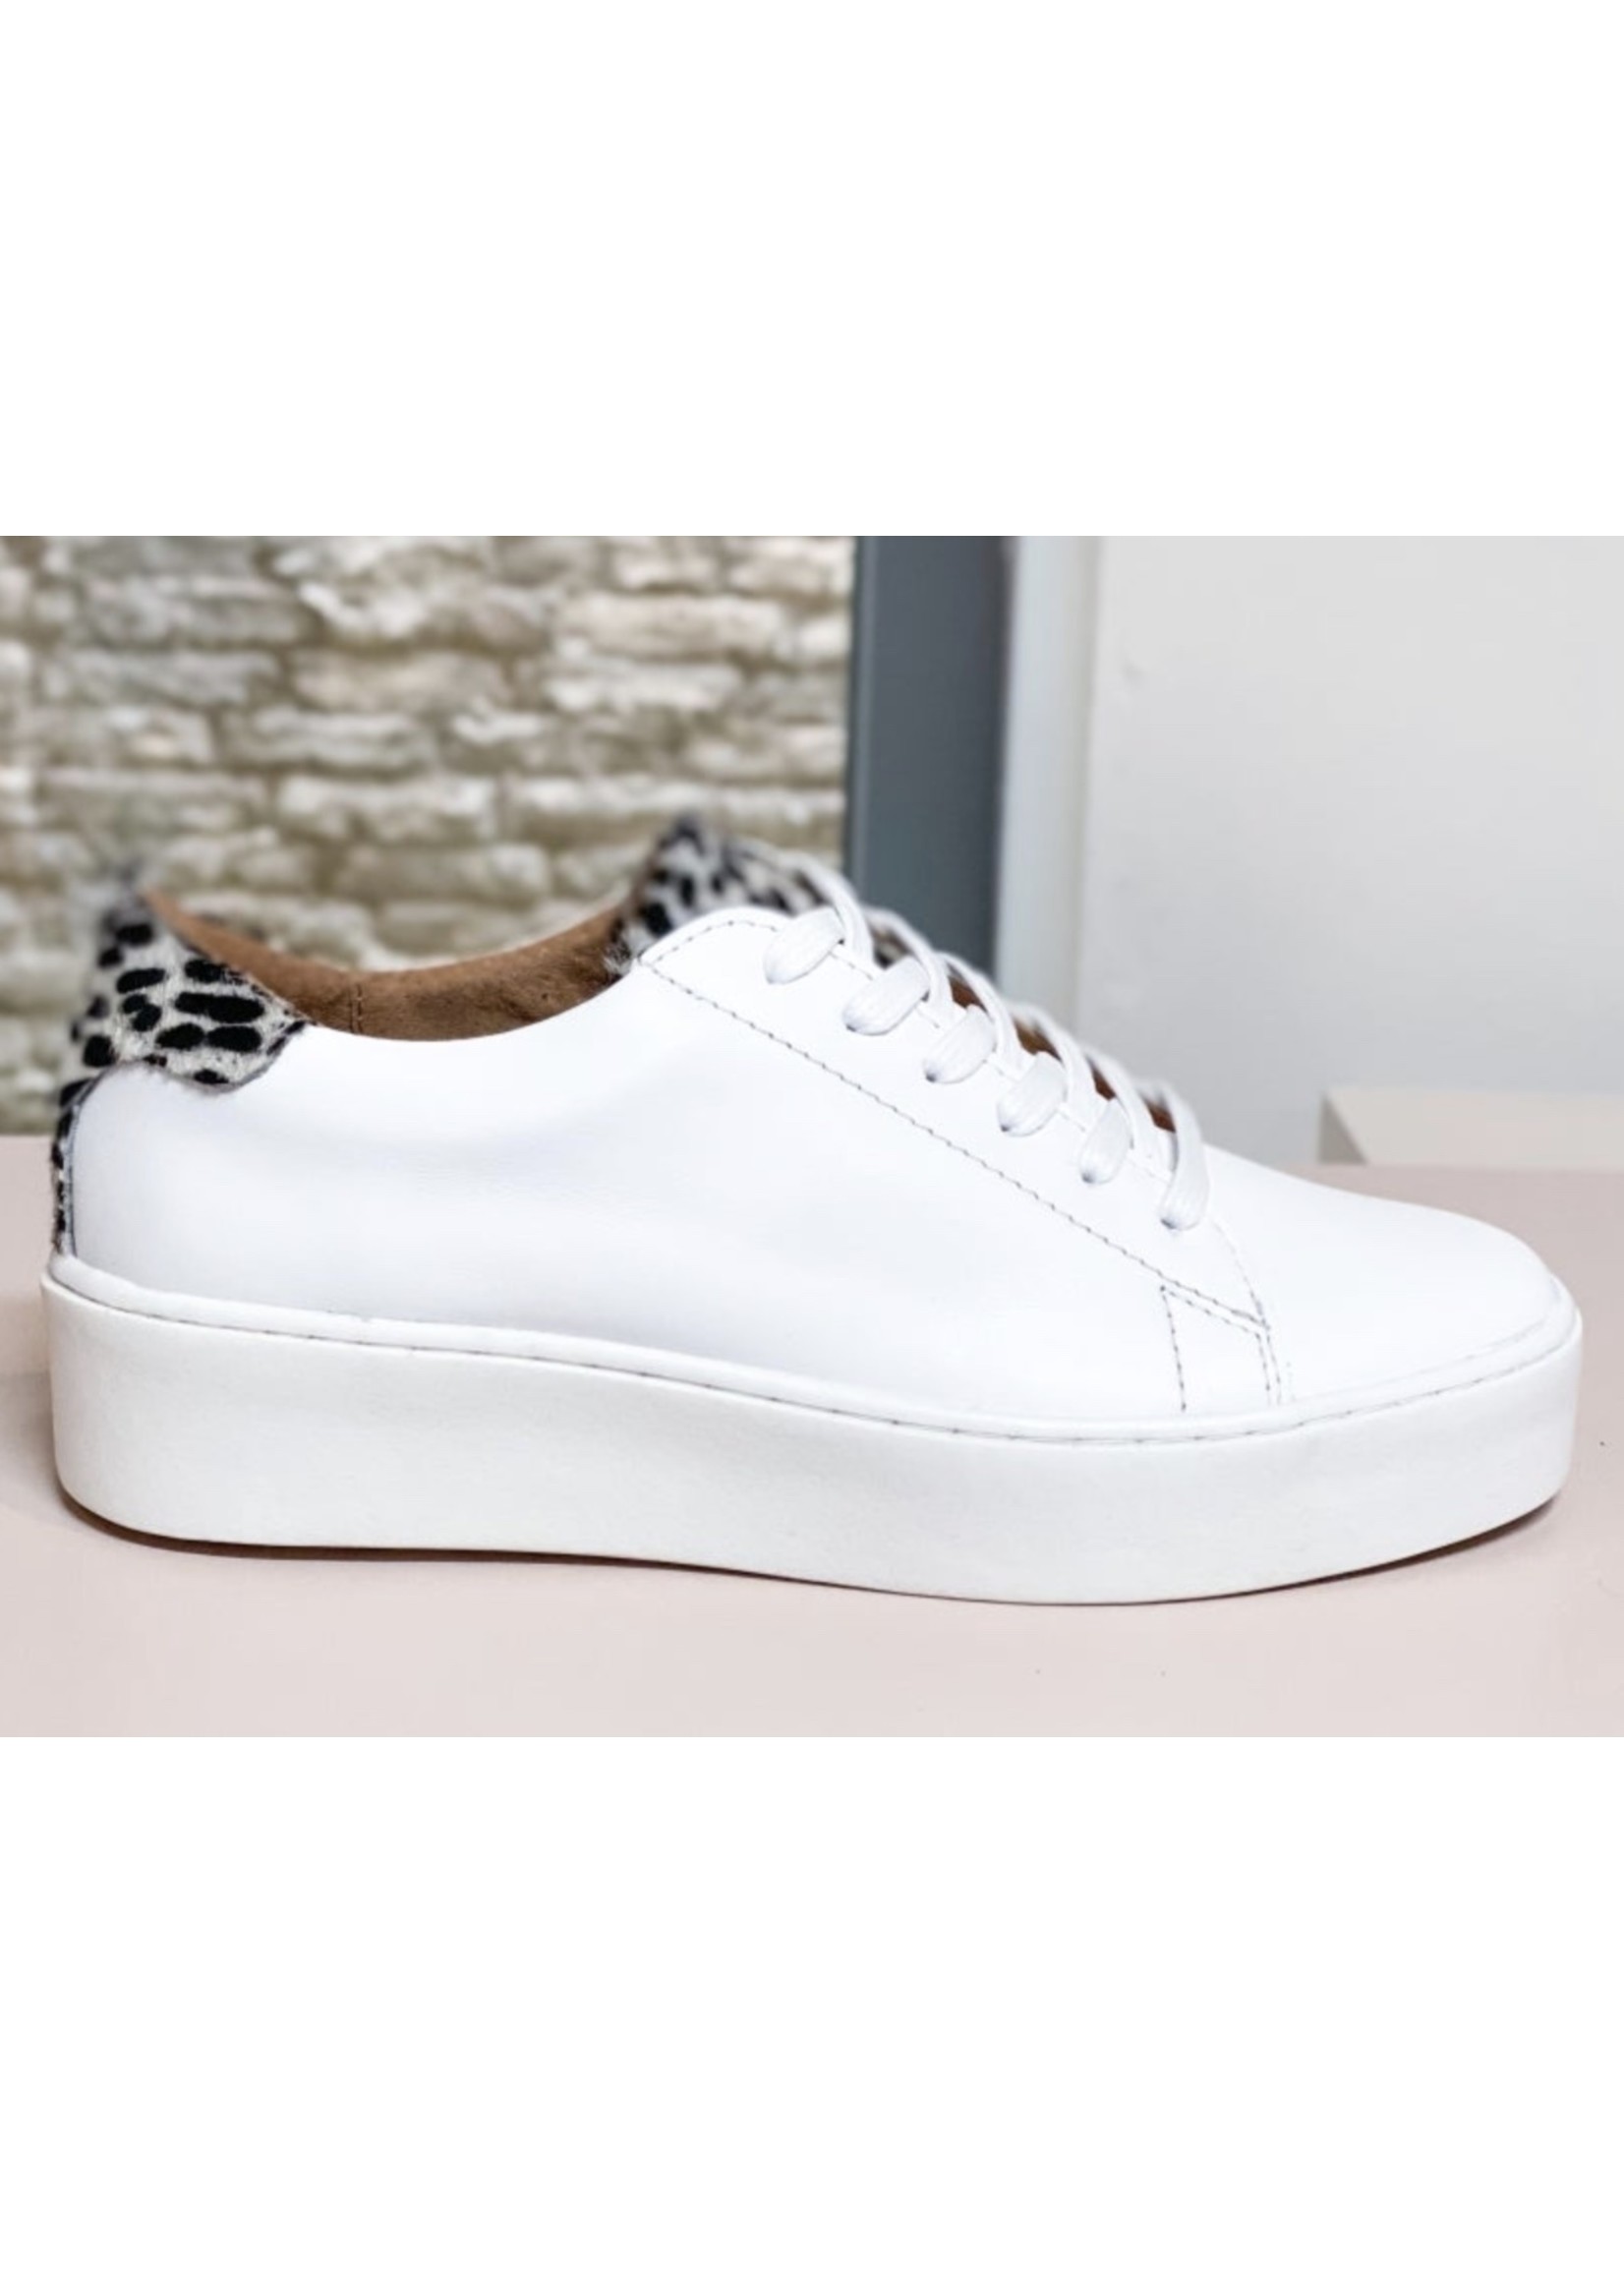 Dwrs Mali cheeta - Sneaker - White/Black